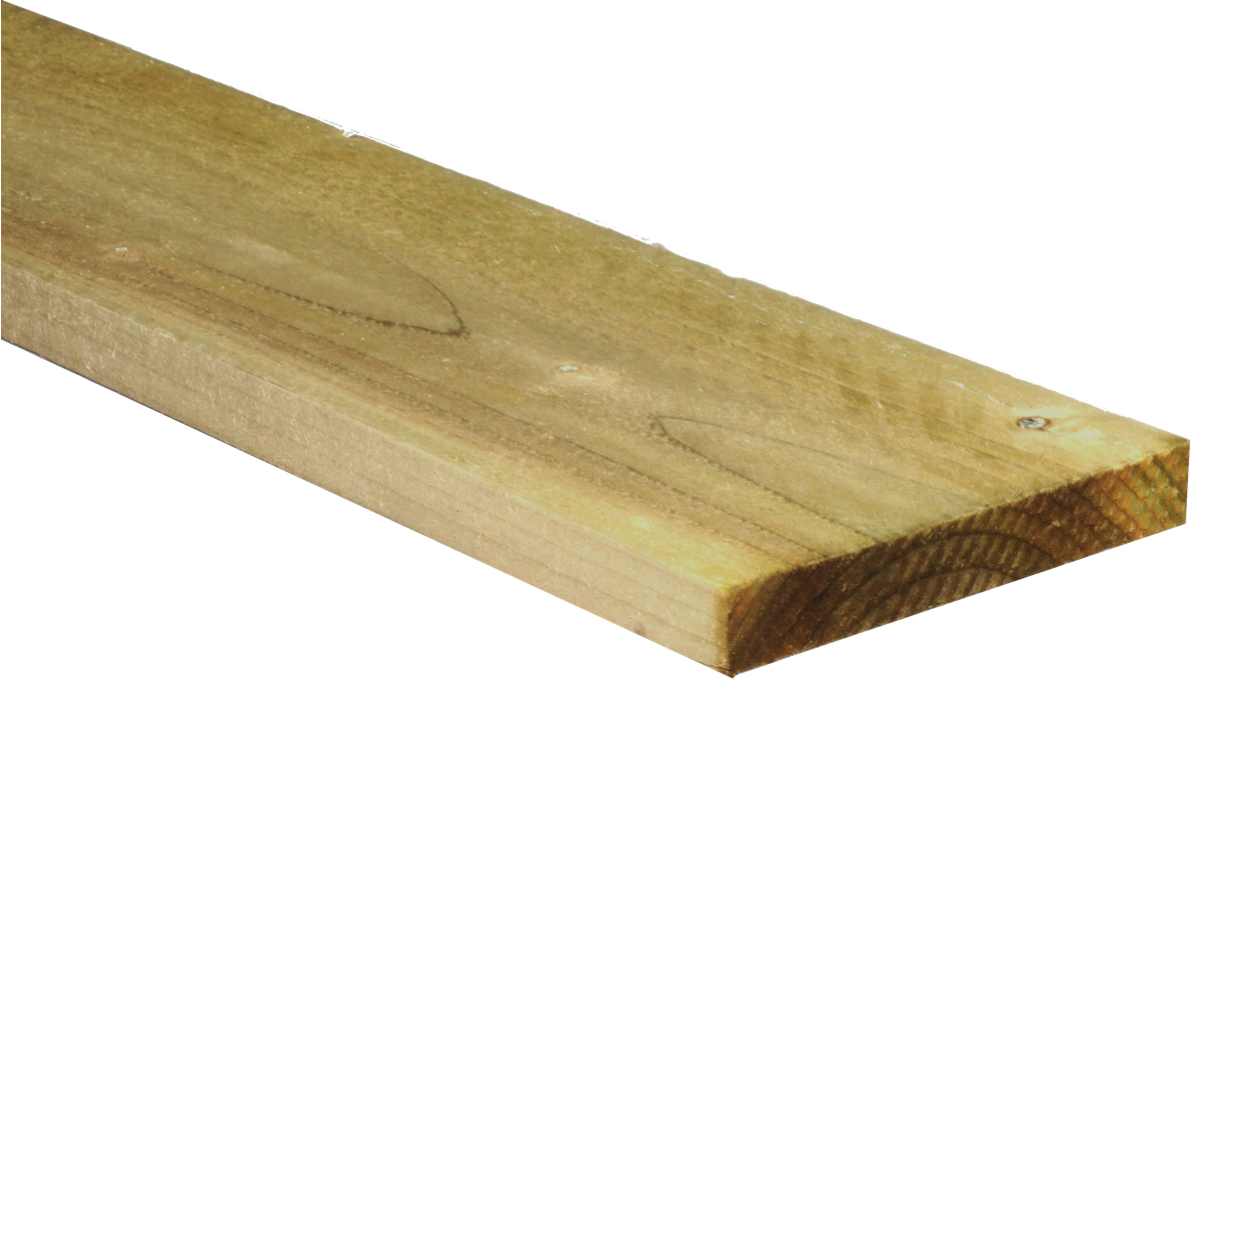 Timber (6" x 1")